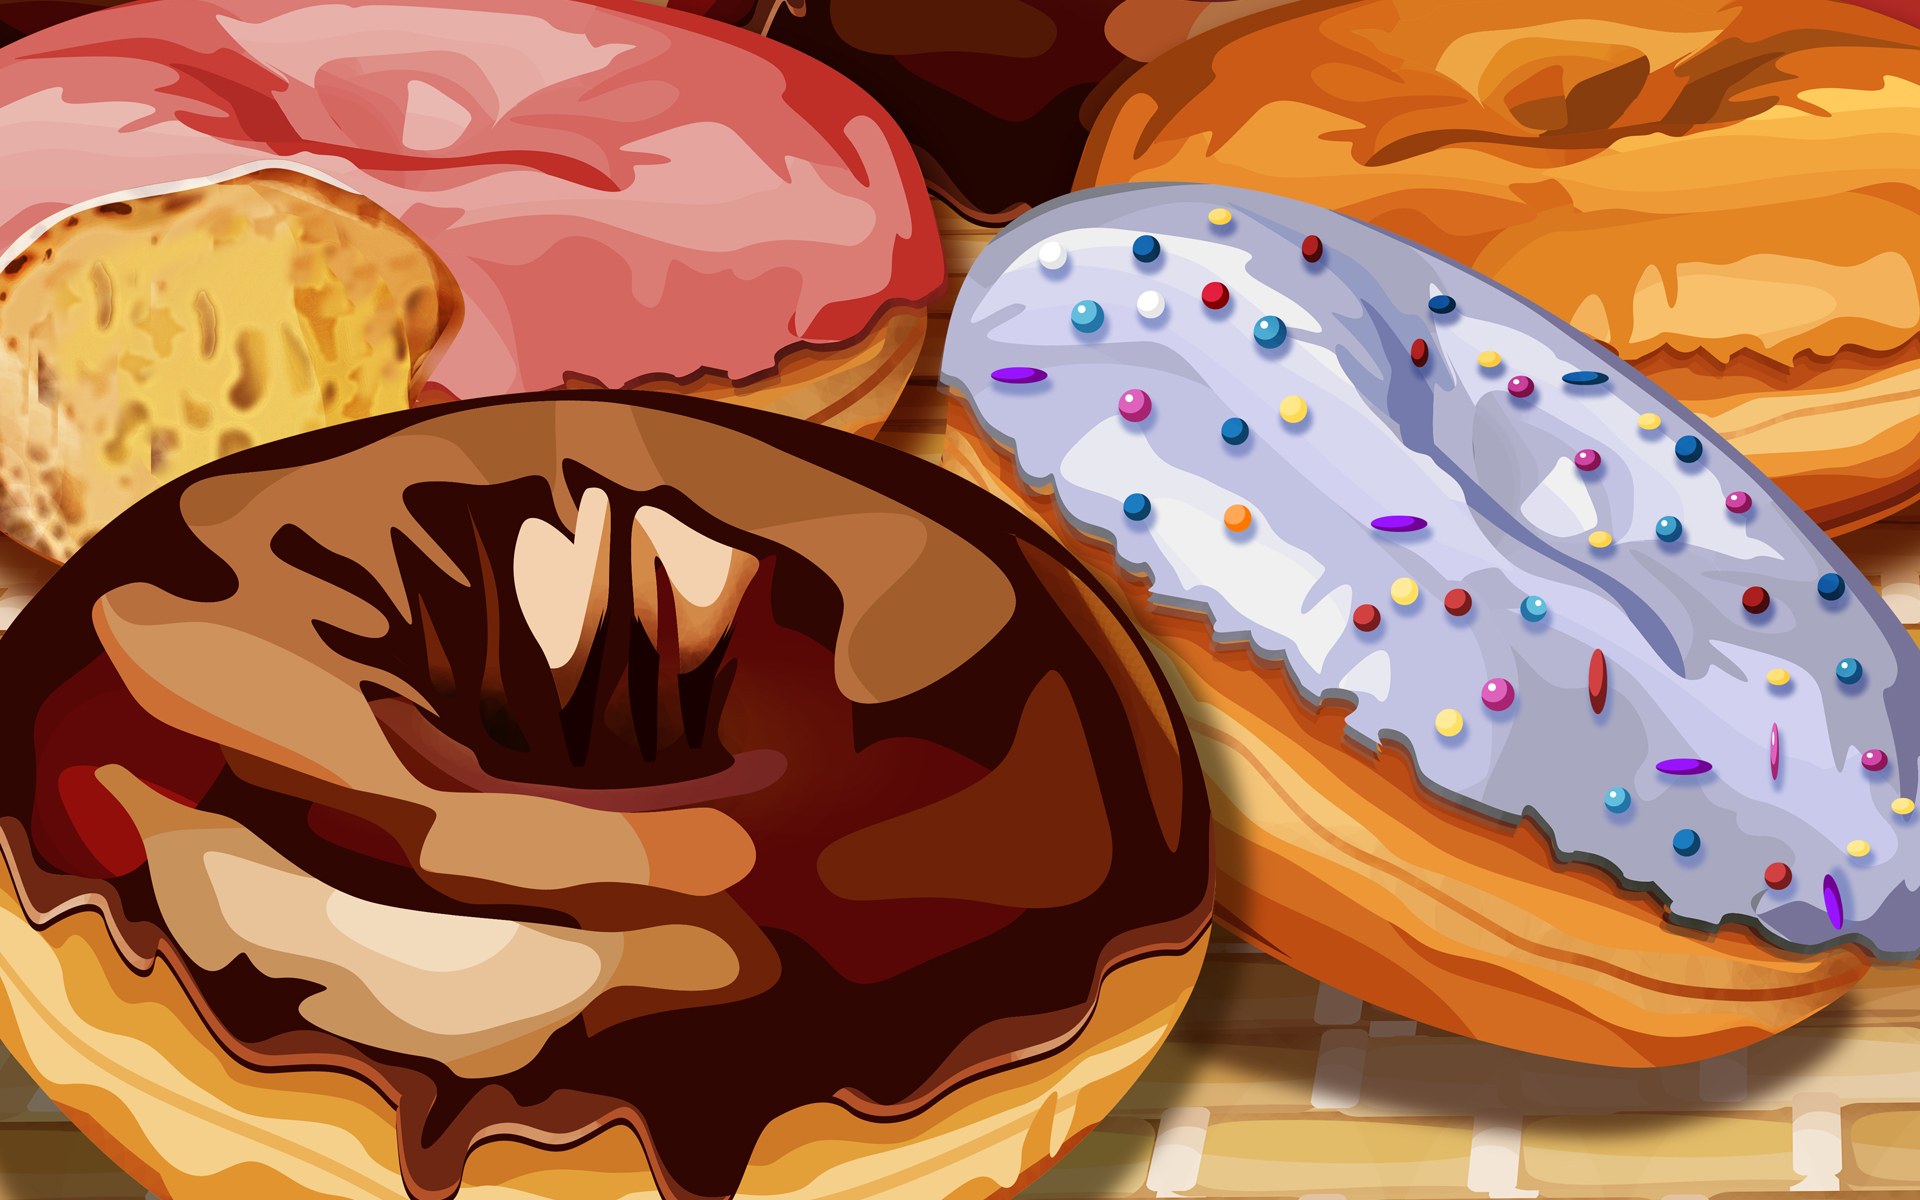 Psd Food Illustrations Doughnuts Donut Illustration